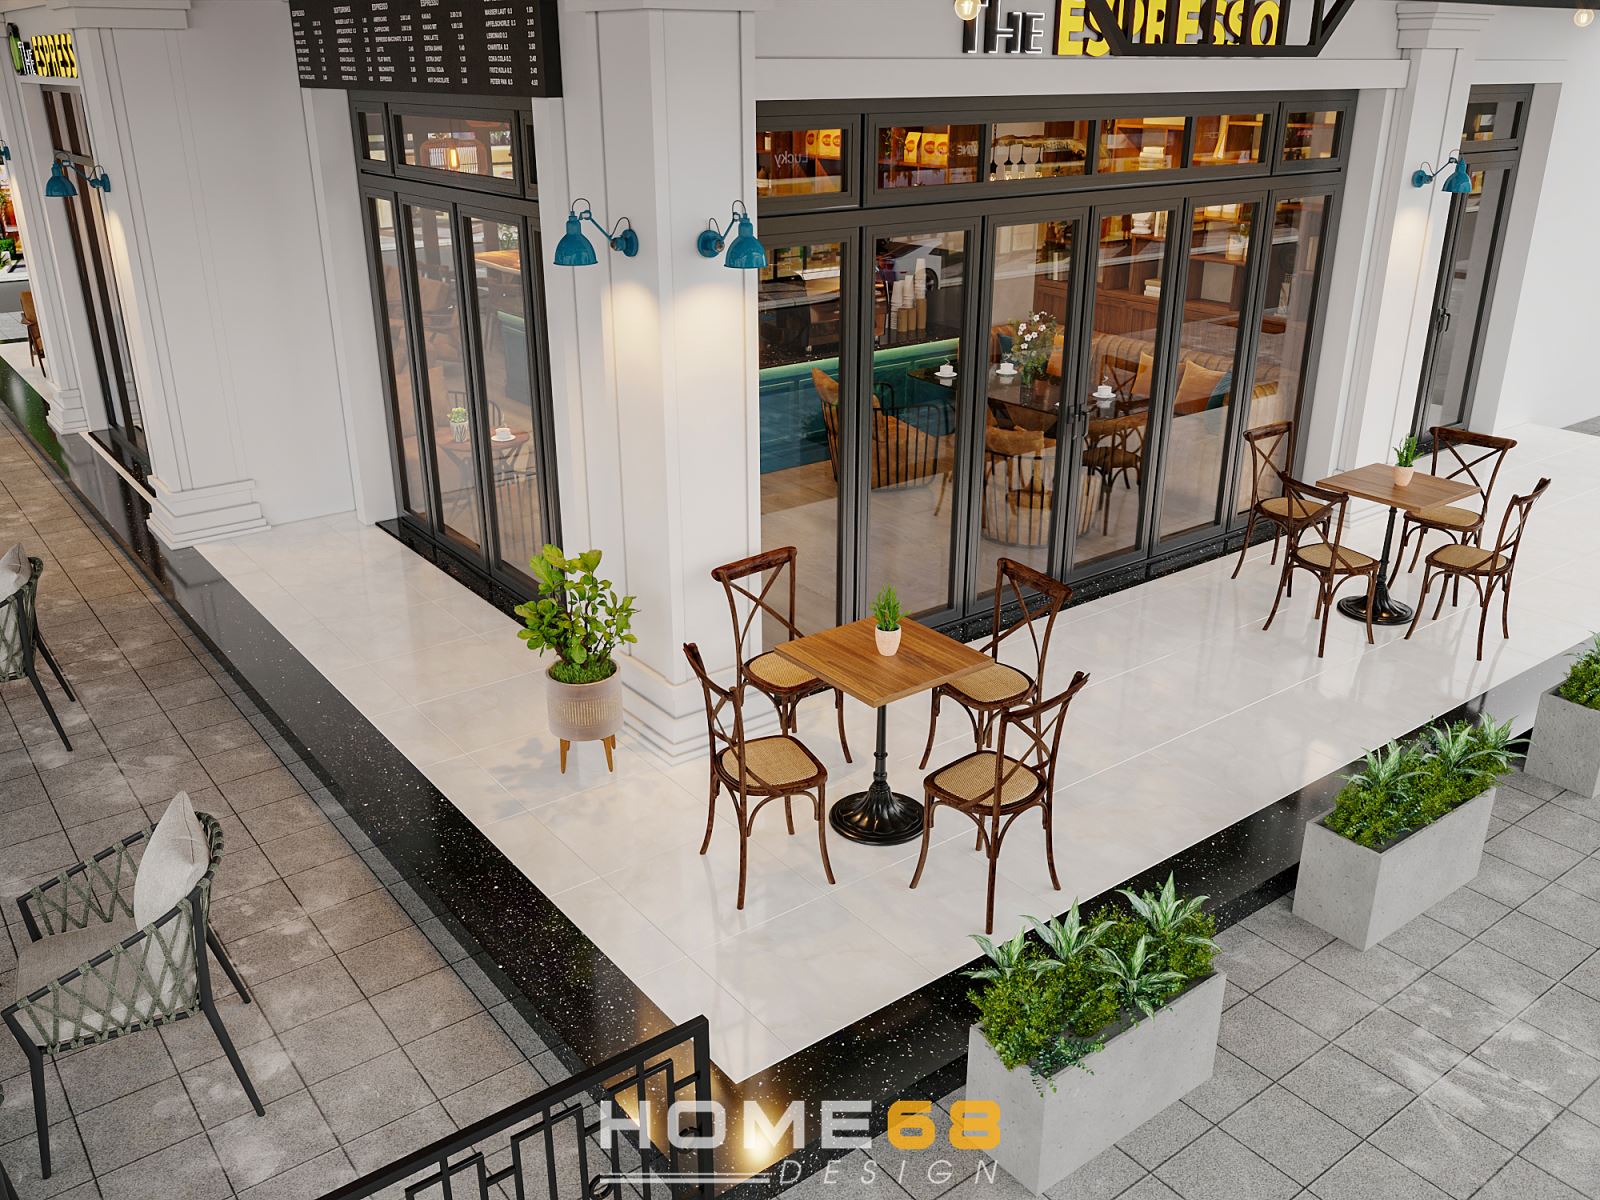 HOME68 thiết kế nội thất quán cafe hiện đại, độc đáo tại Hải Phòng